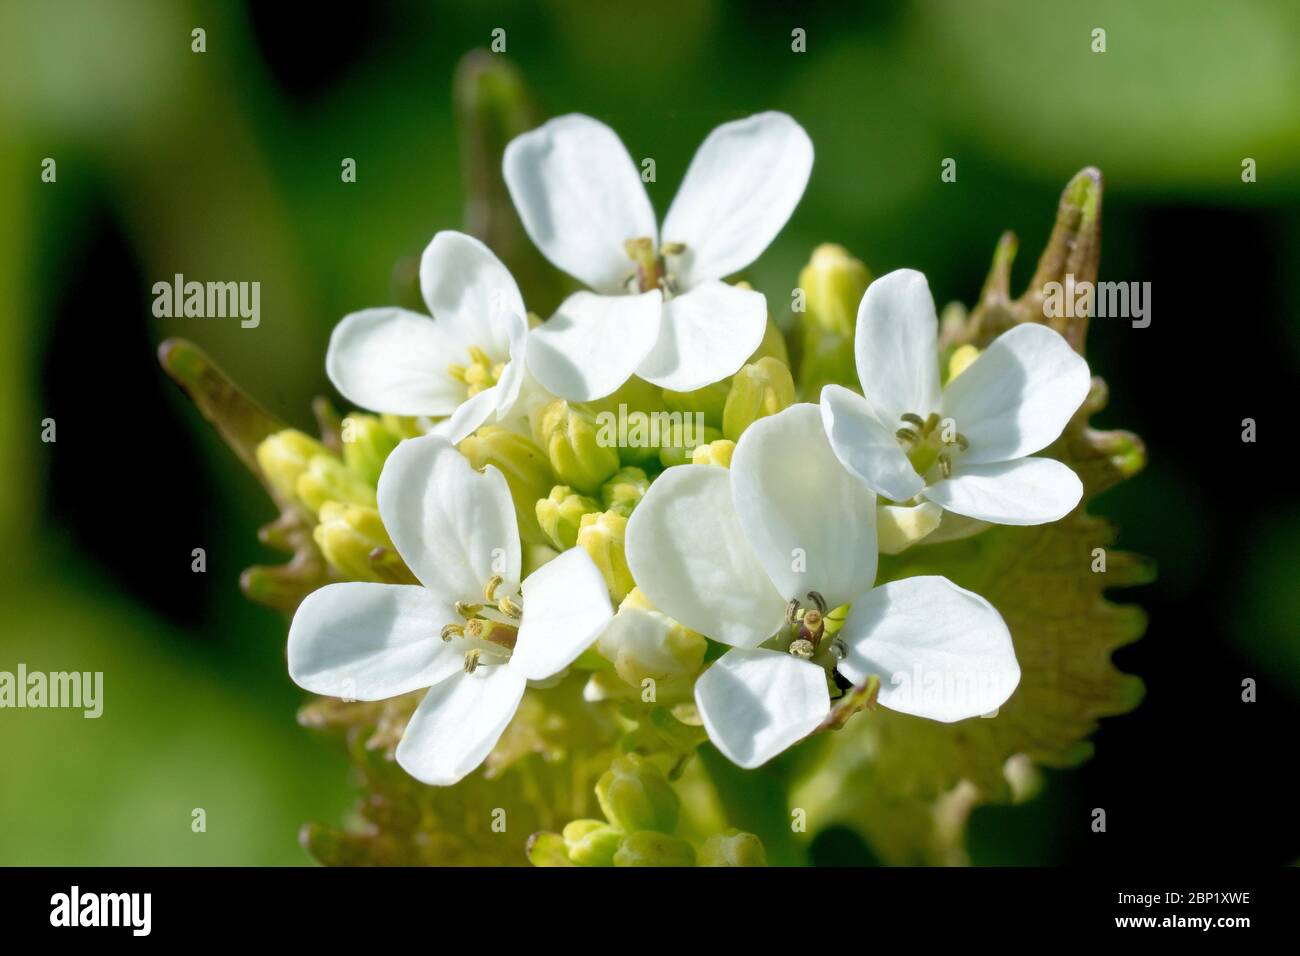 Mostaza de ajo (alliaria petiolata), también conocida como Jack por el Hedge, de cerca mostrando la cabeza de la flor a medida que las flores comienzan a aparecer. Foto de stock